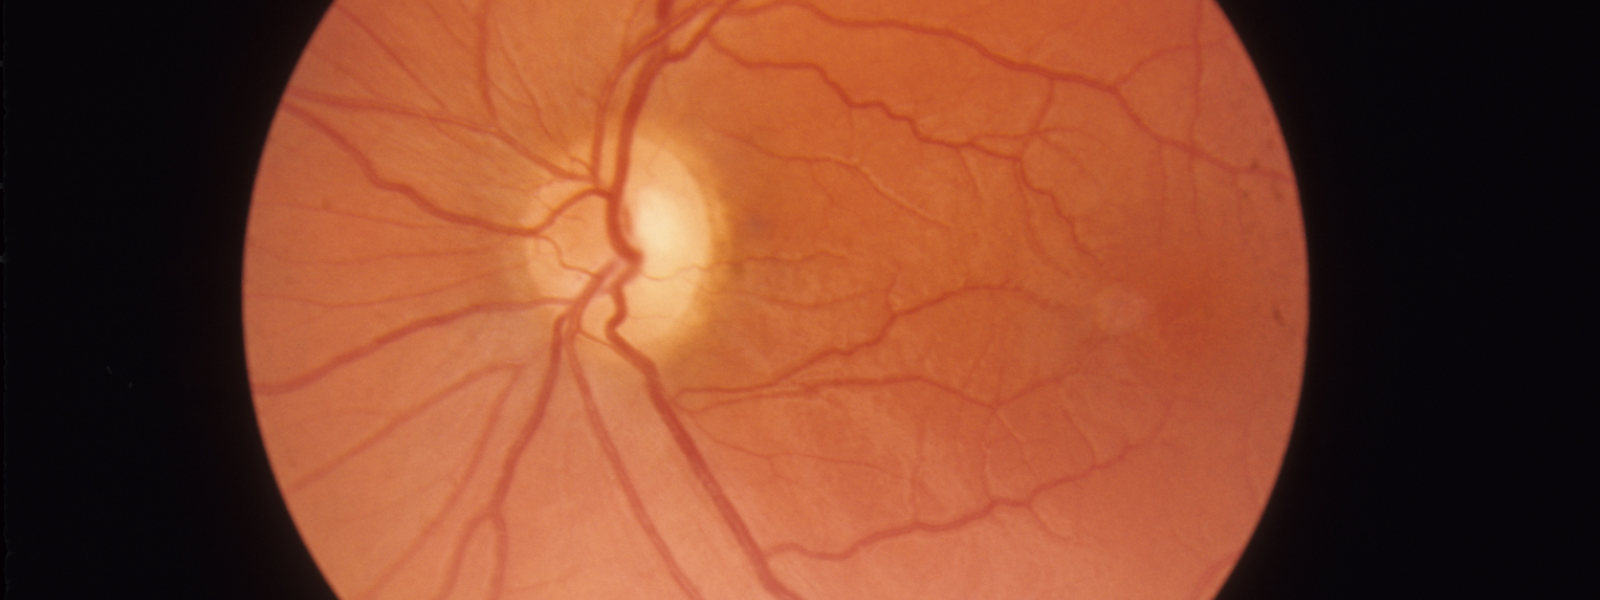 imagem técnica da retina de lhon